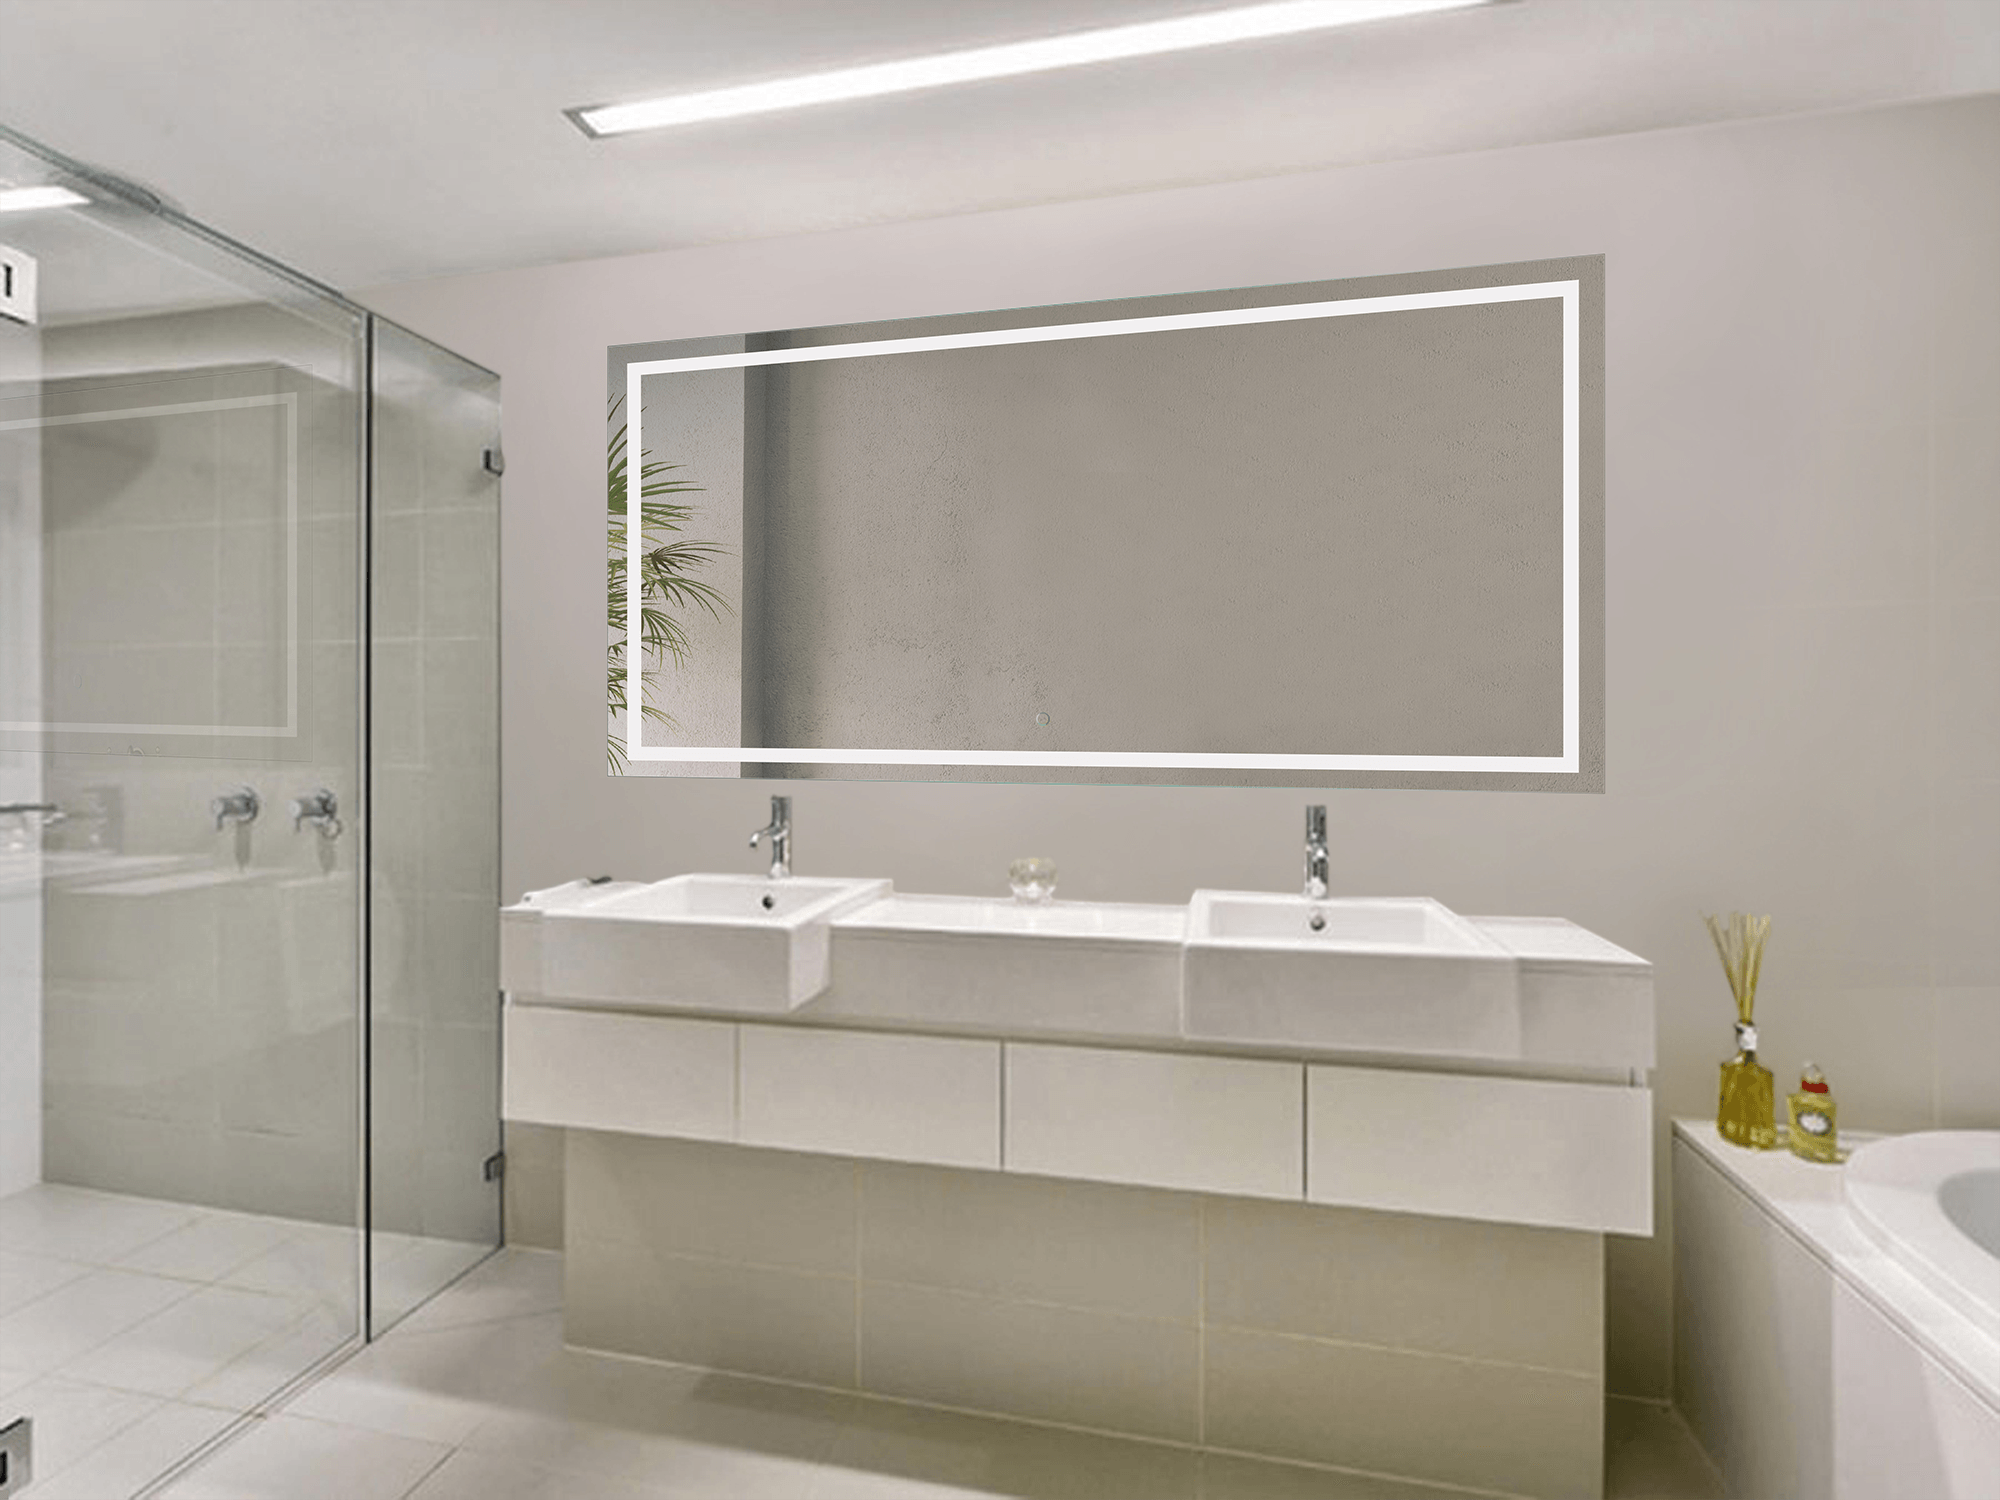 Krugg Icon 72″ X 36″ LED Bathroom Mirror w/ Dimmer & Defogger